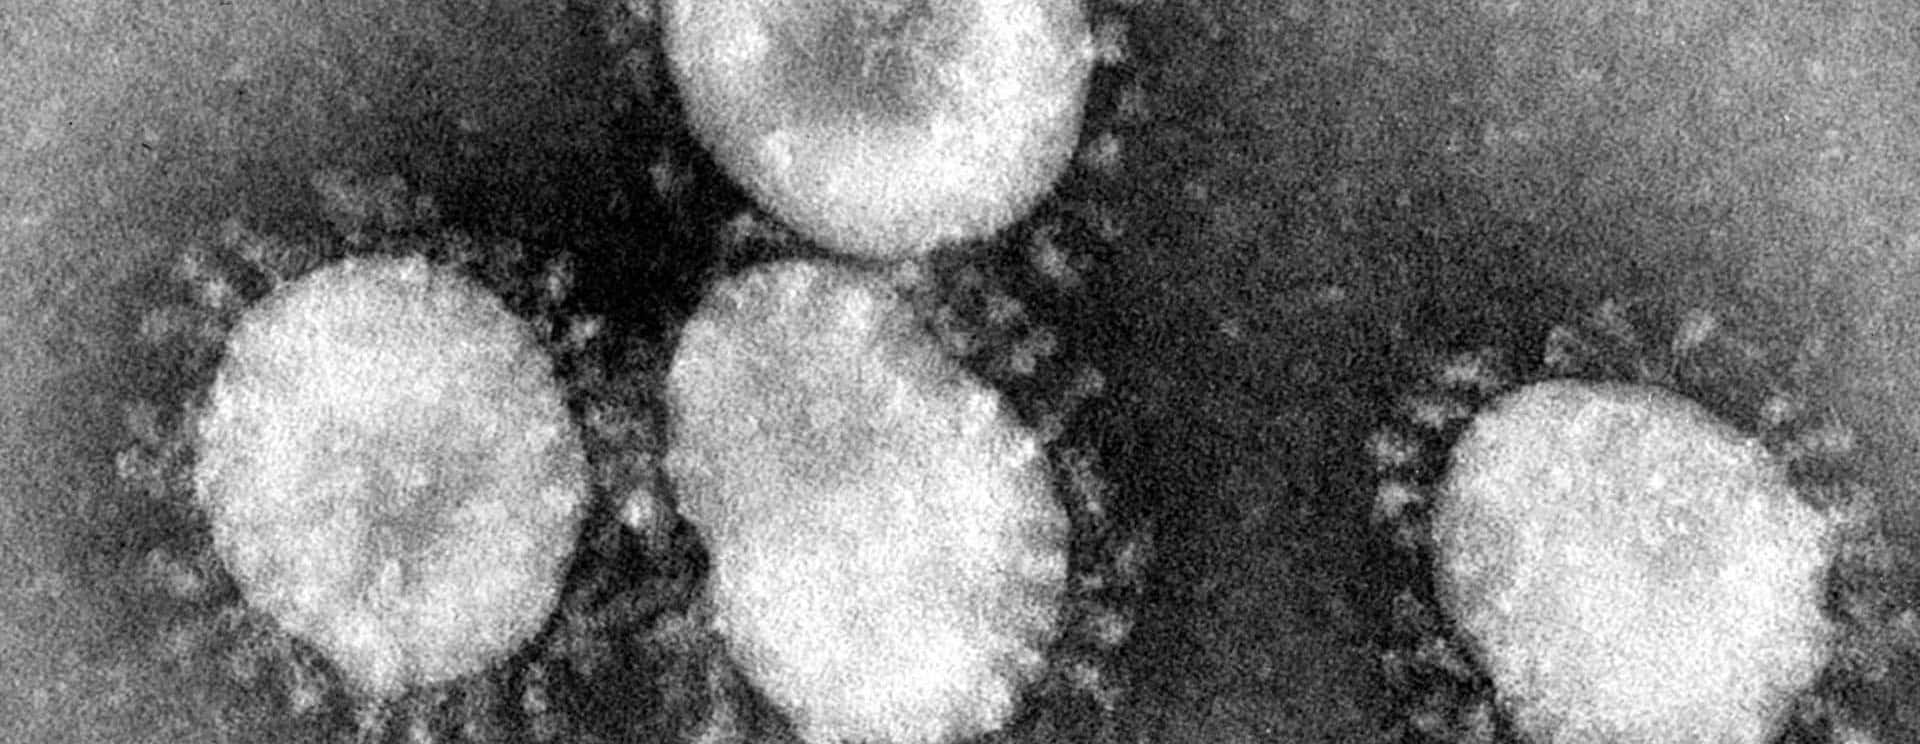 coronaviruses-jpg-43